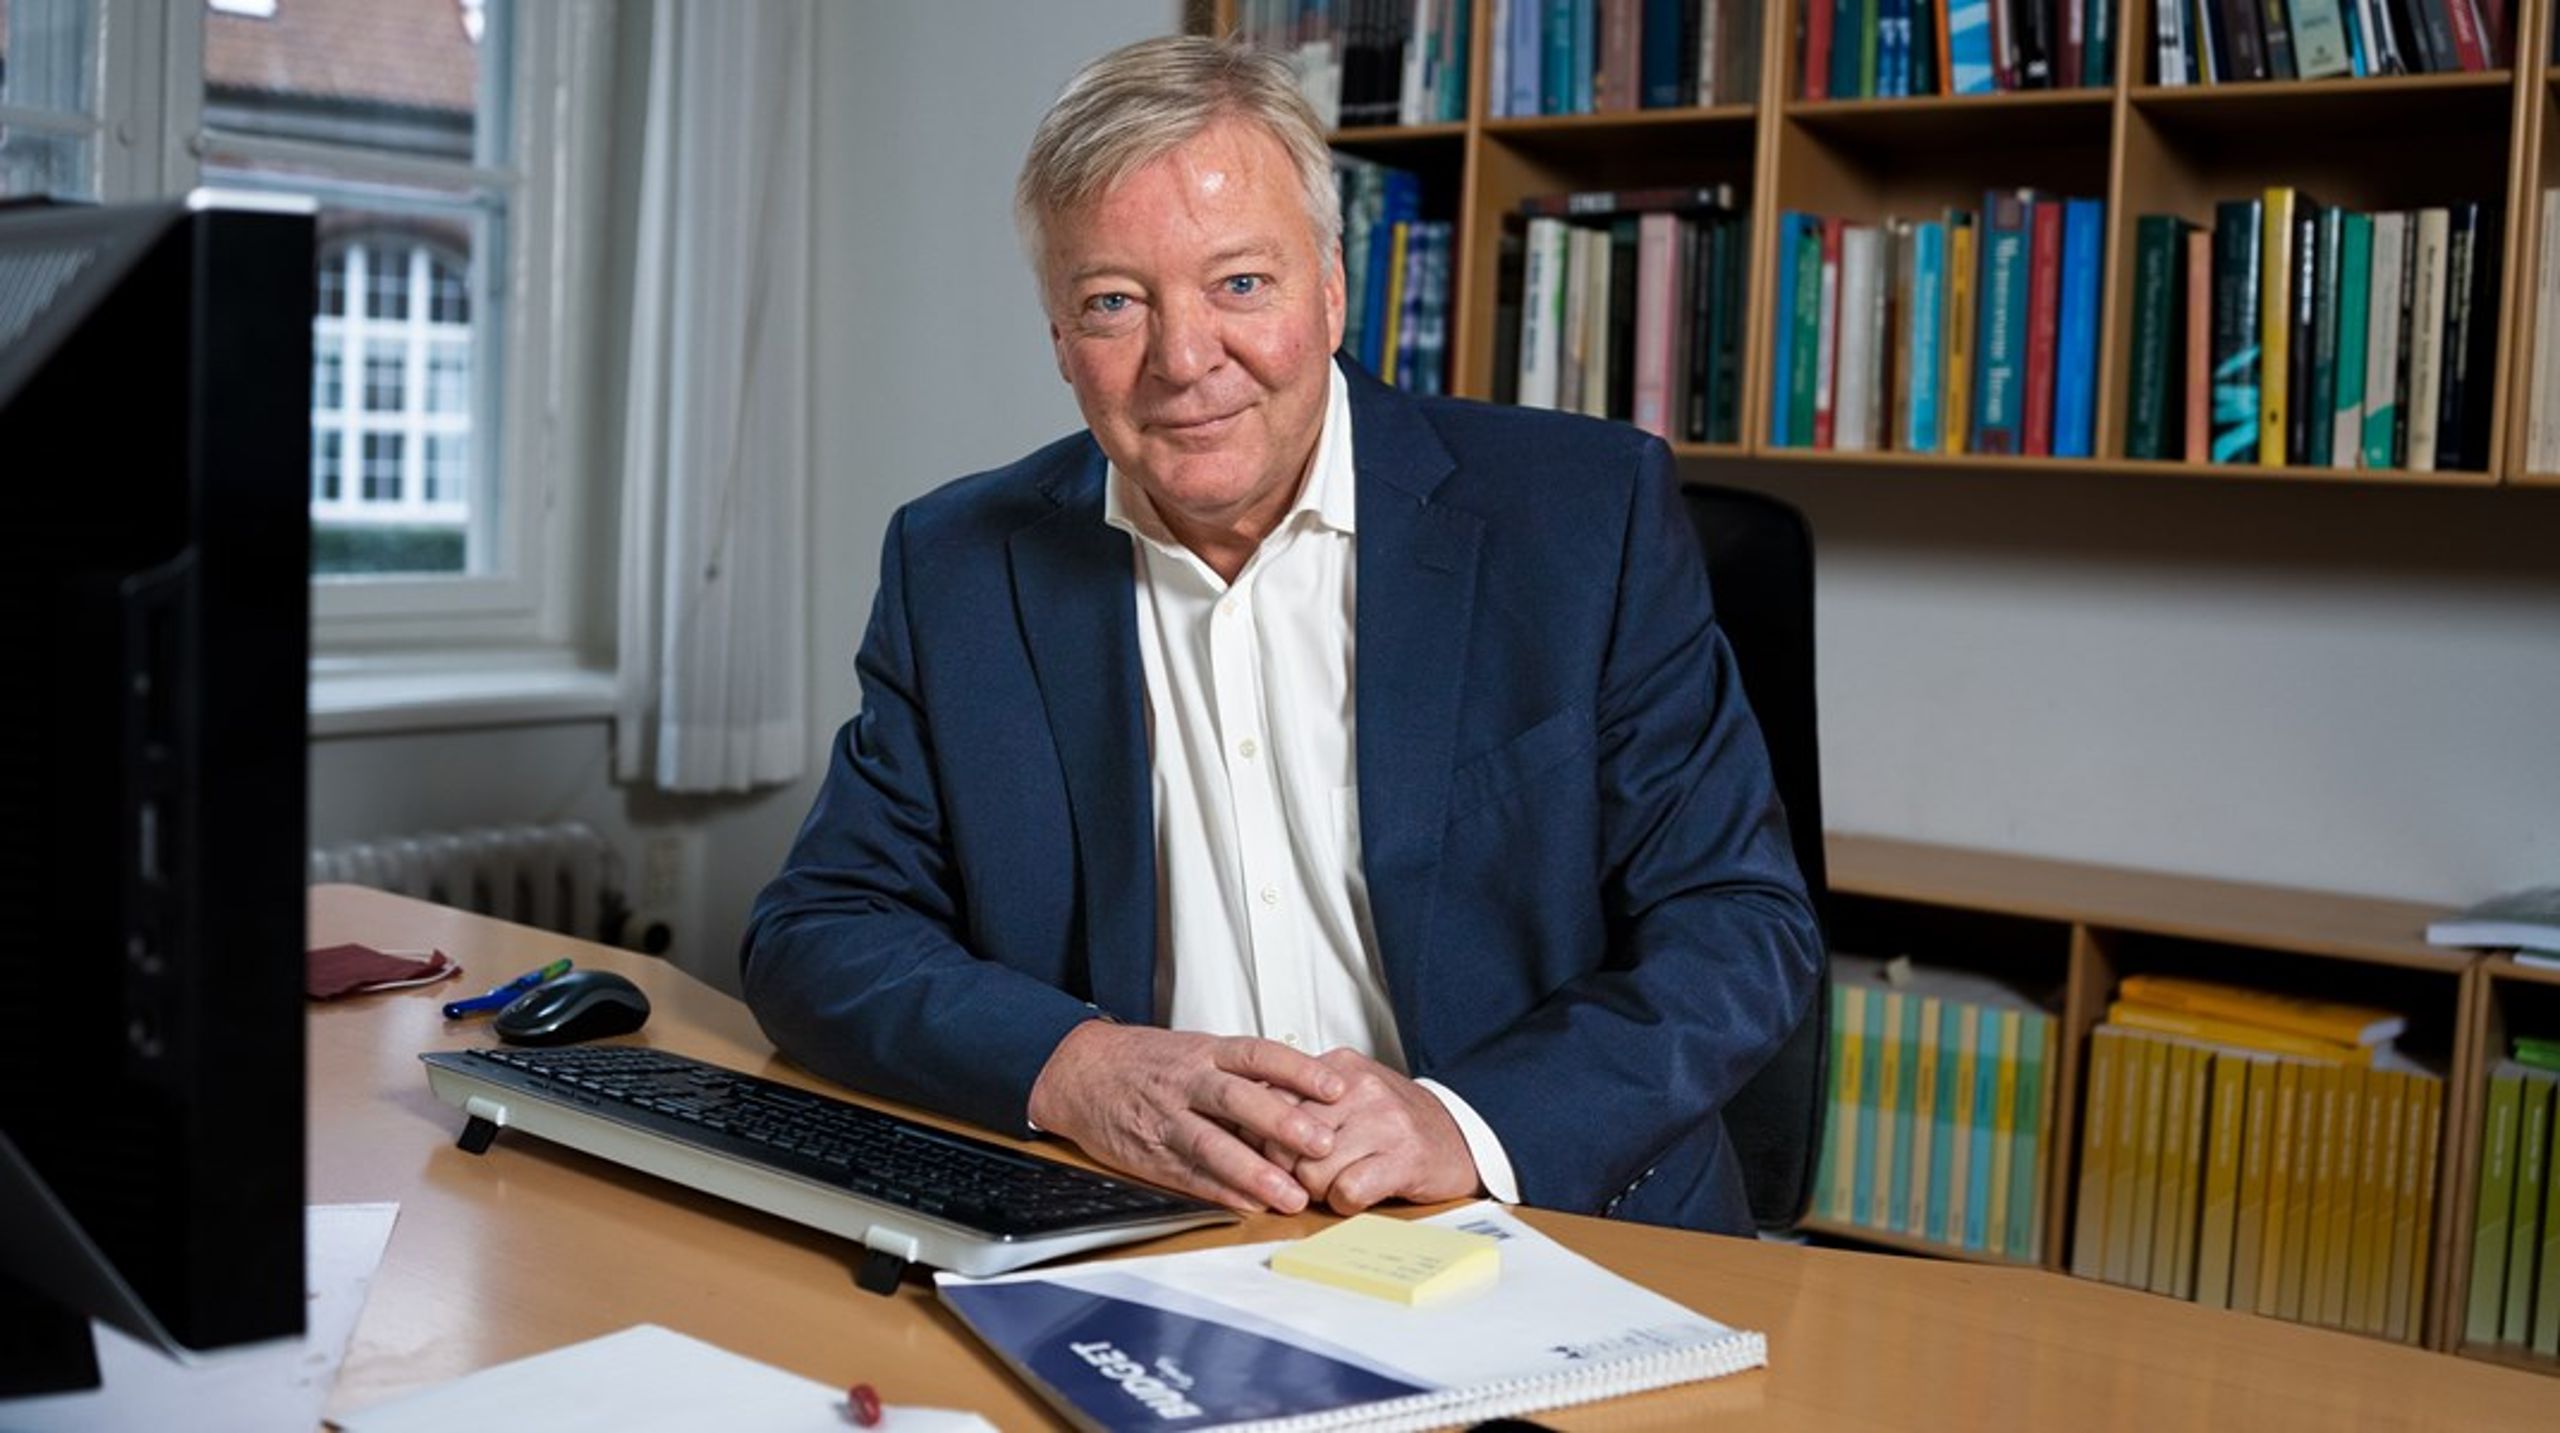 Lars Haagen Pedersen var som sekretariatschef i Velfærdskommissionen med til at foreslå at lade folkepensionsalderen stige i takt med levealderen. Det var langtfra et ukontroversielt forslag tilbage i 2005.